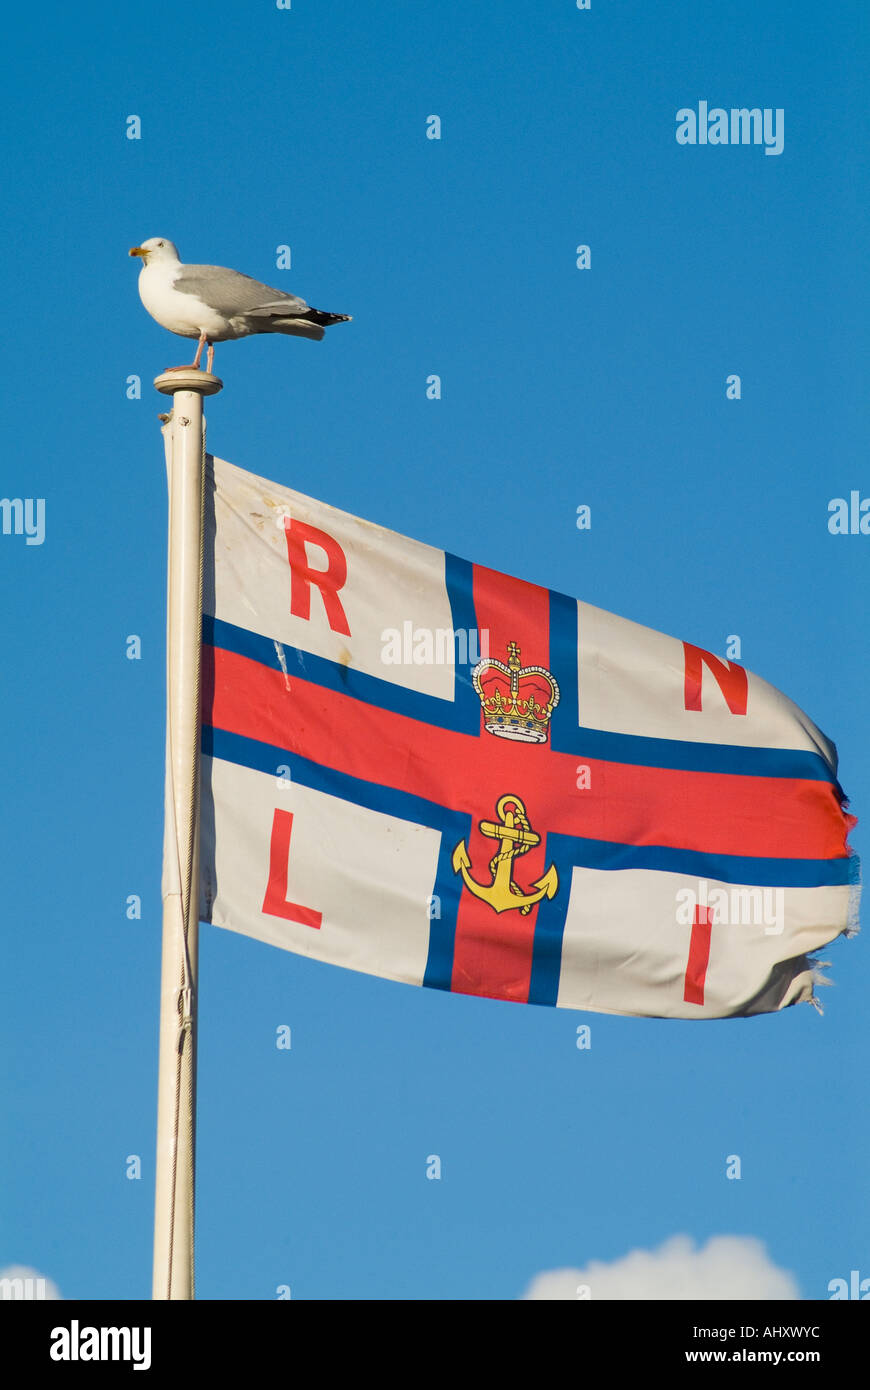 Drapeau Drapeau de la RNLI DH UK Seagull assis sur Royal National Lifeboat Institution flag Banque D'Images